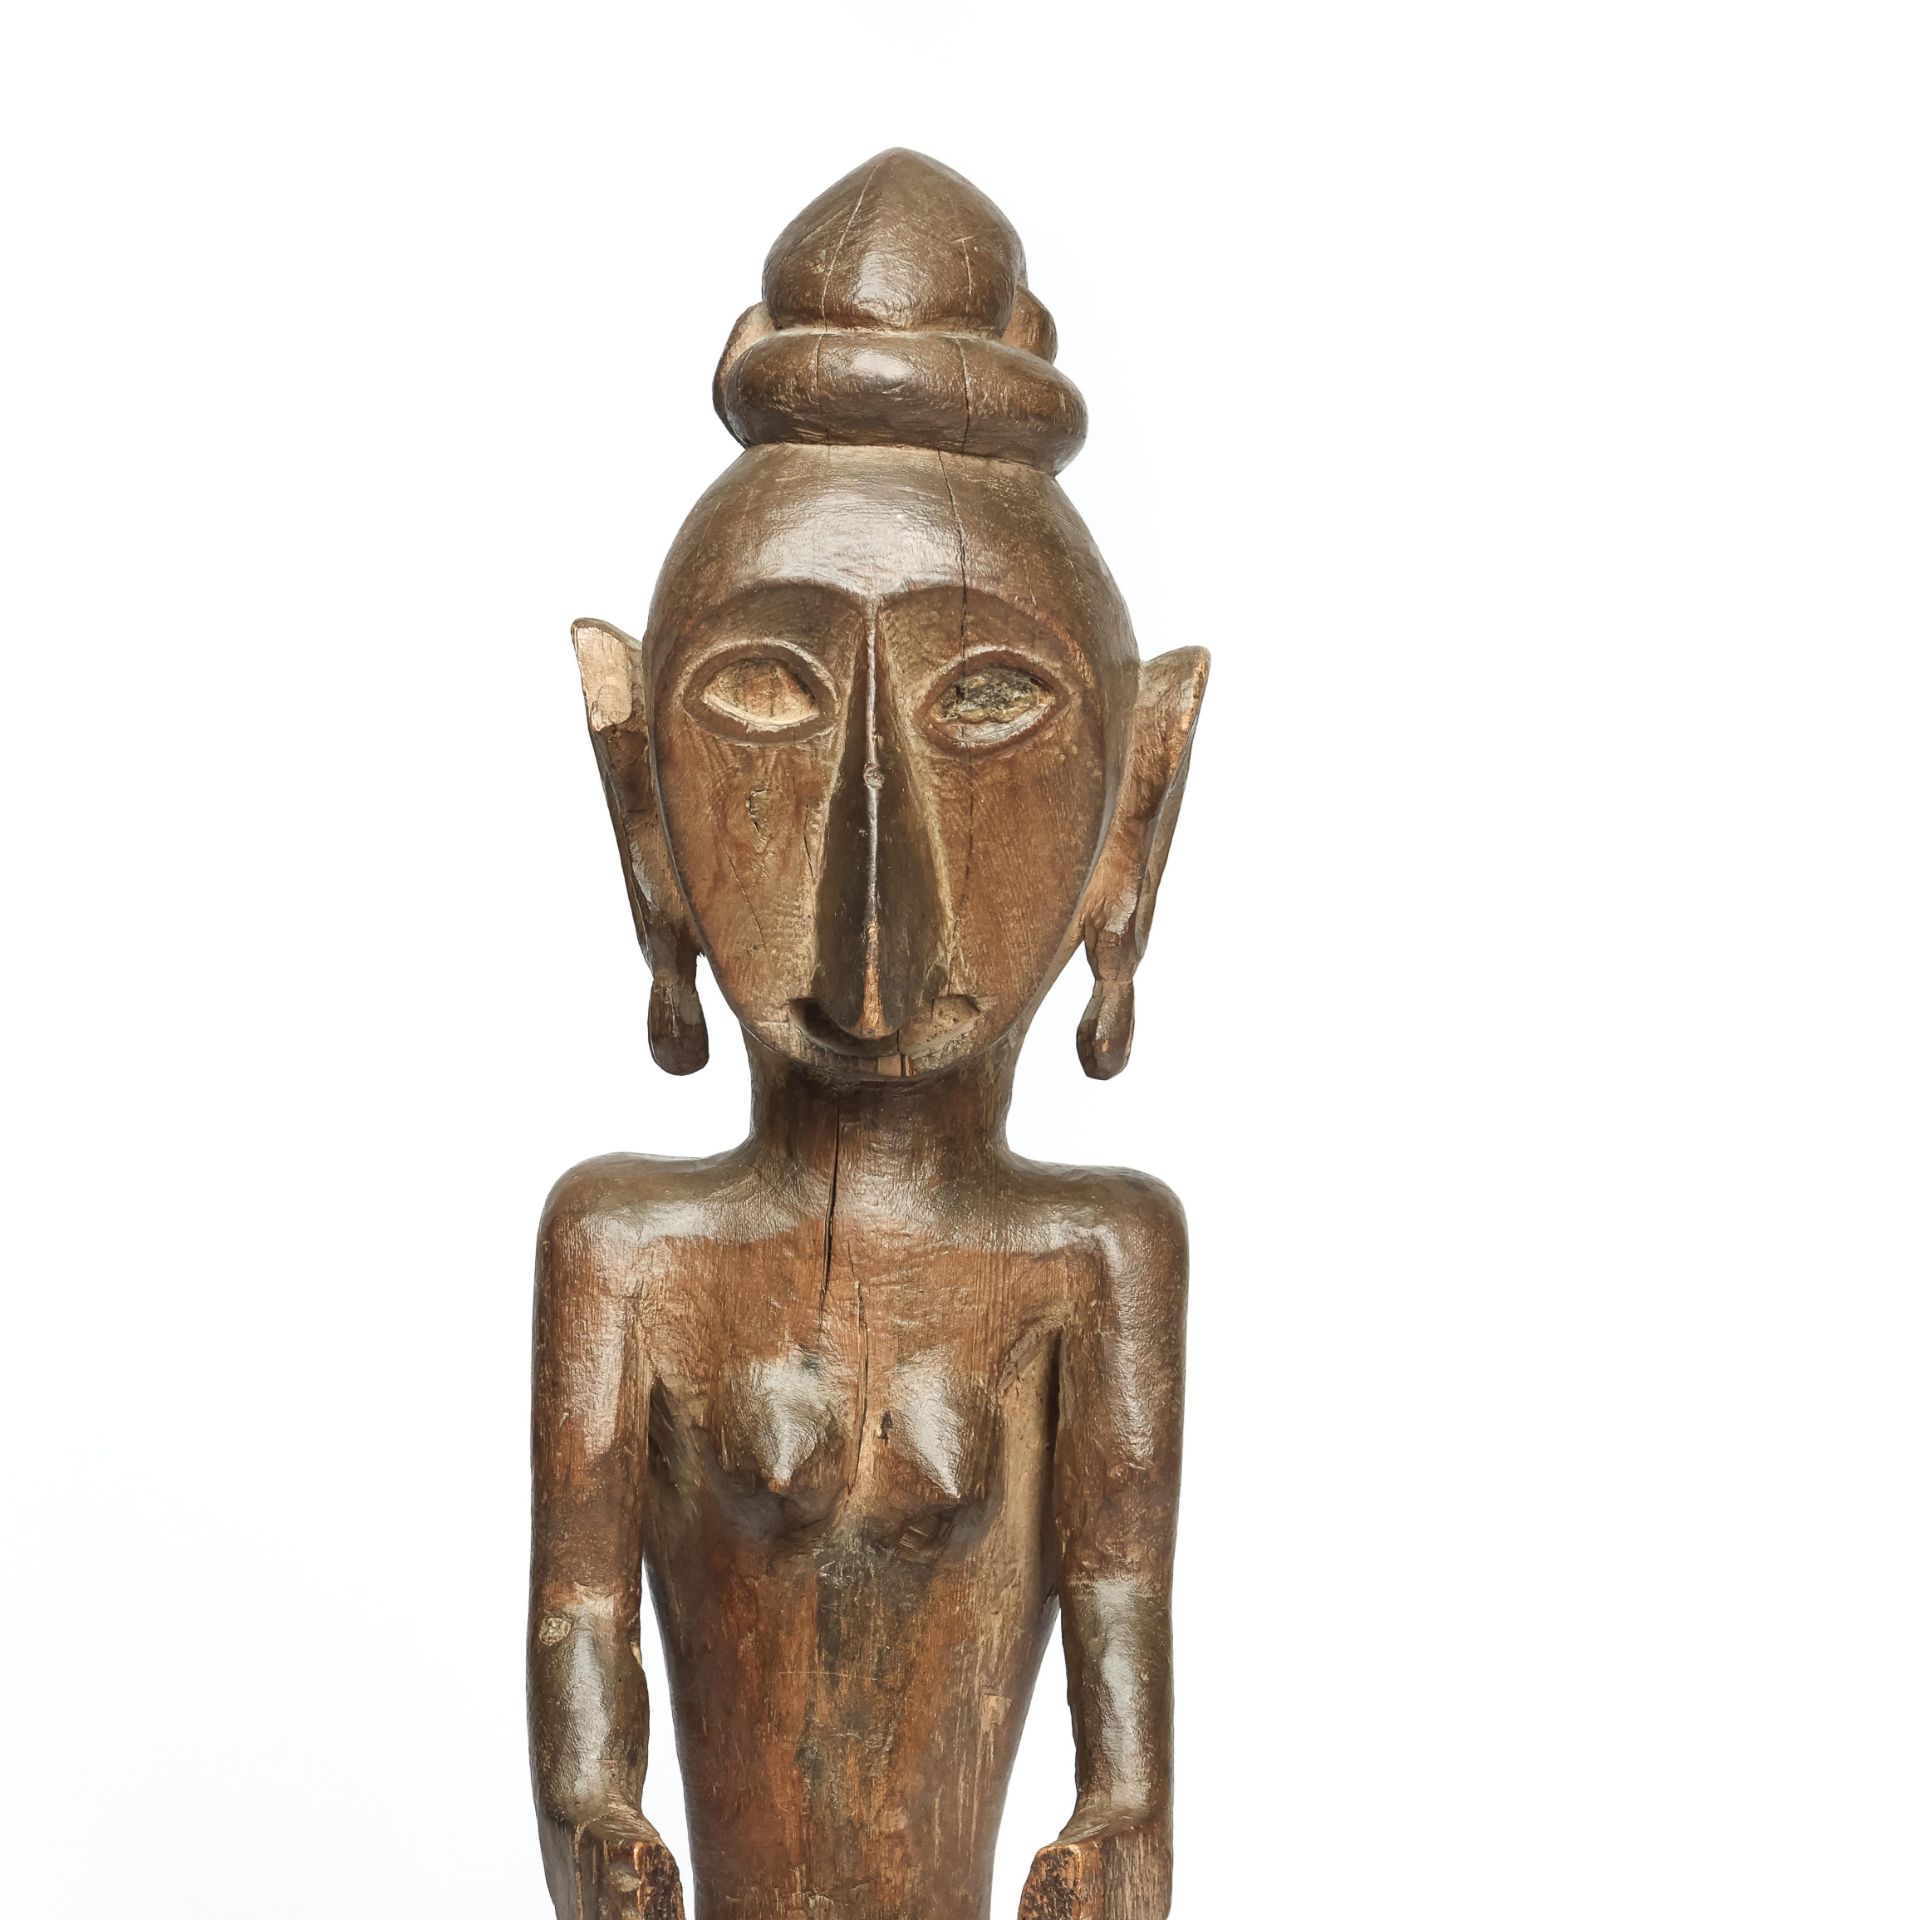 Moluccas, Leti Islands, ancestress figure, - Image 13 of 21